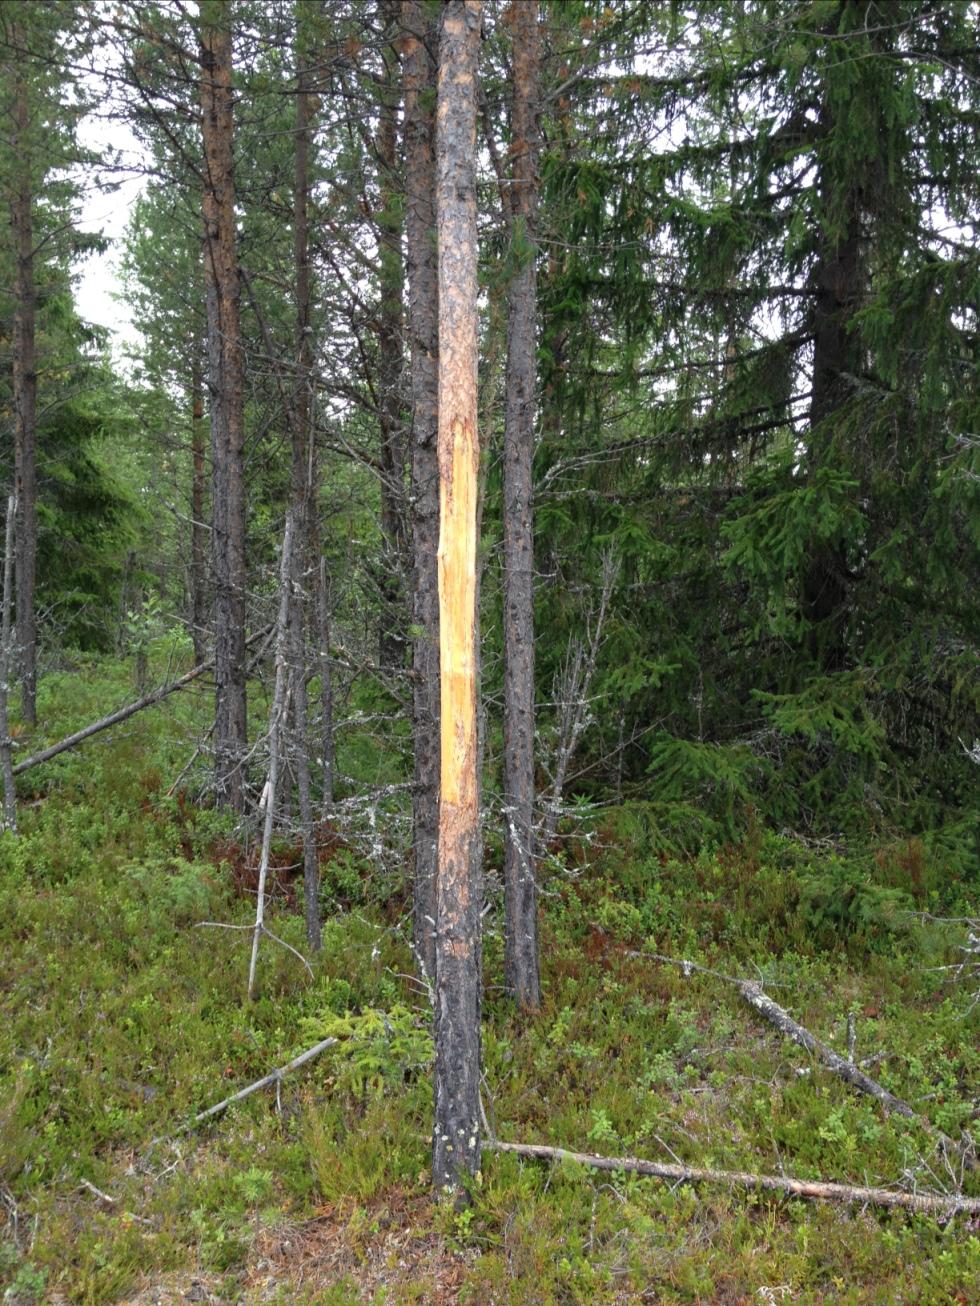 Björnkliarträd i Härjedalen. Sägs att det är Sveriges tätaste björnstam som bor där, skriver Tommi.